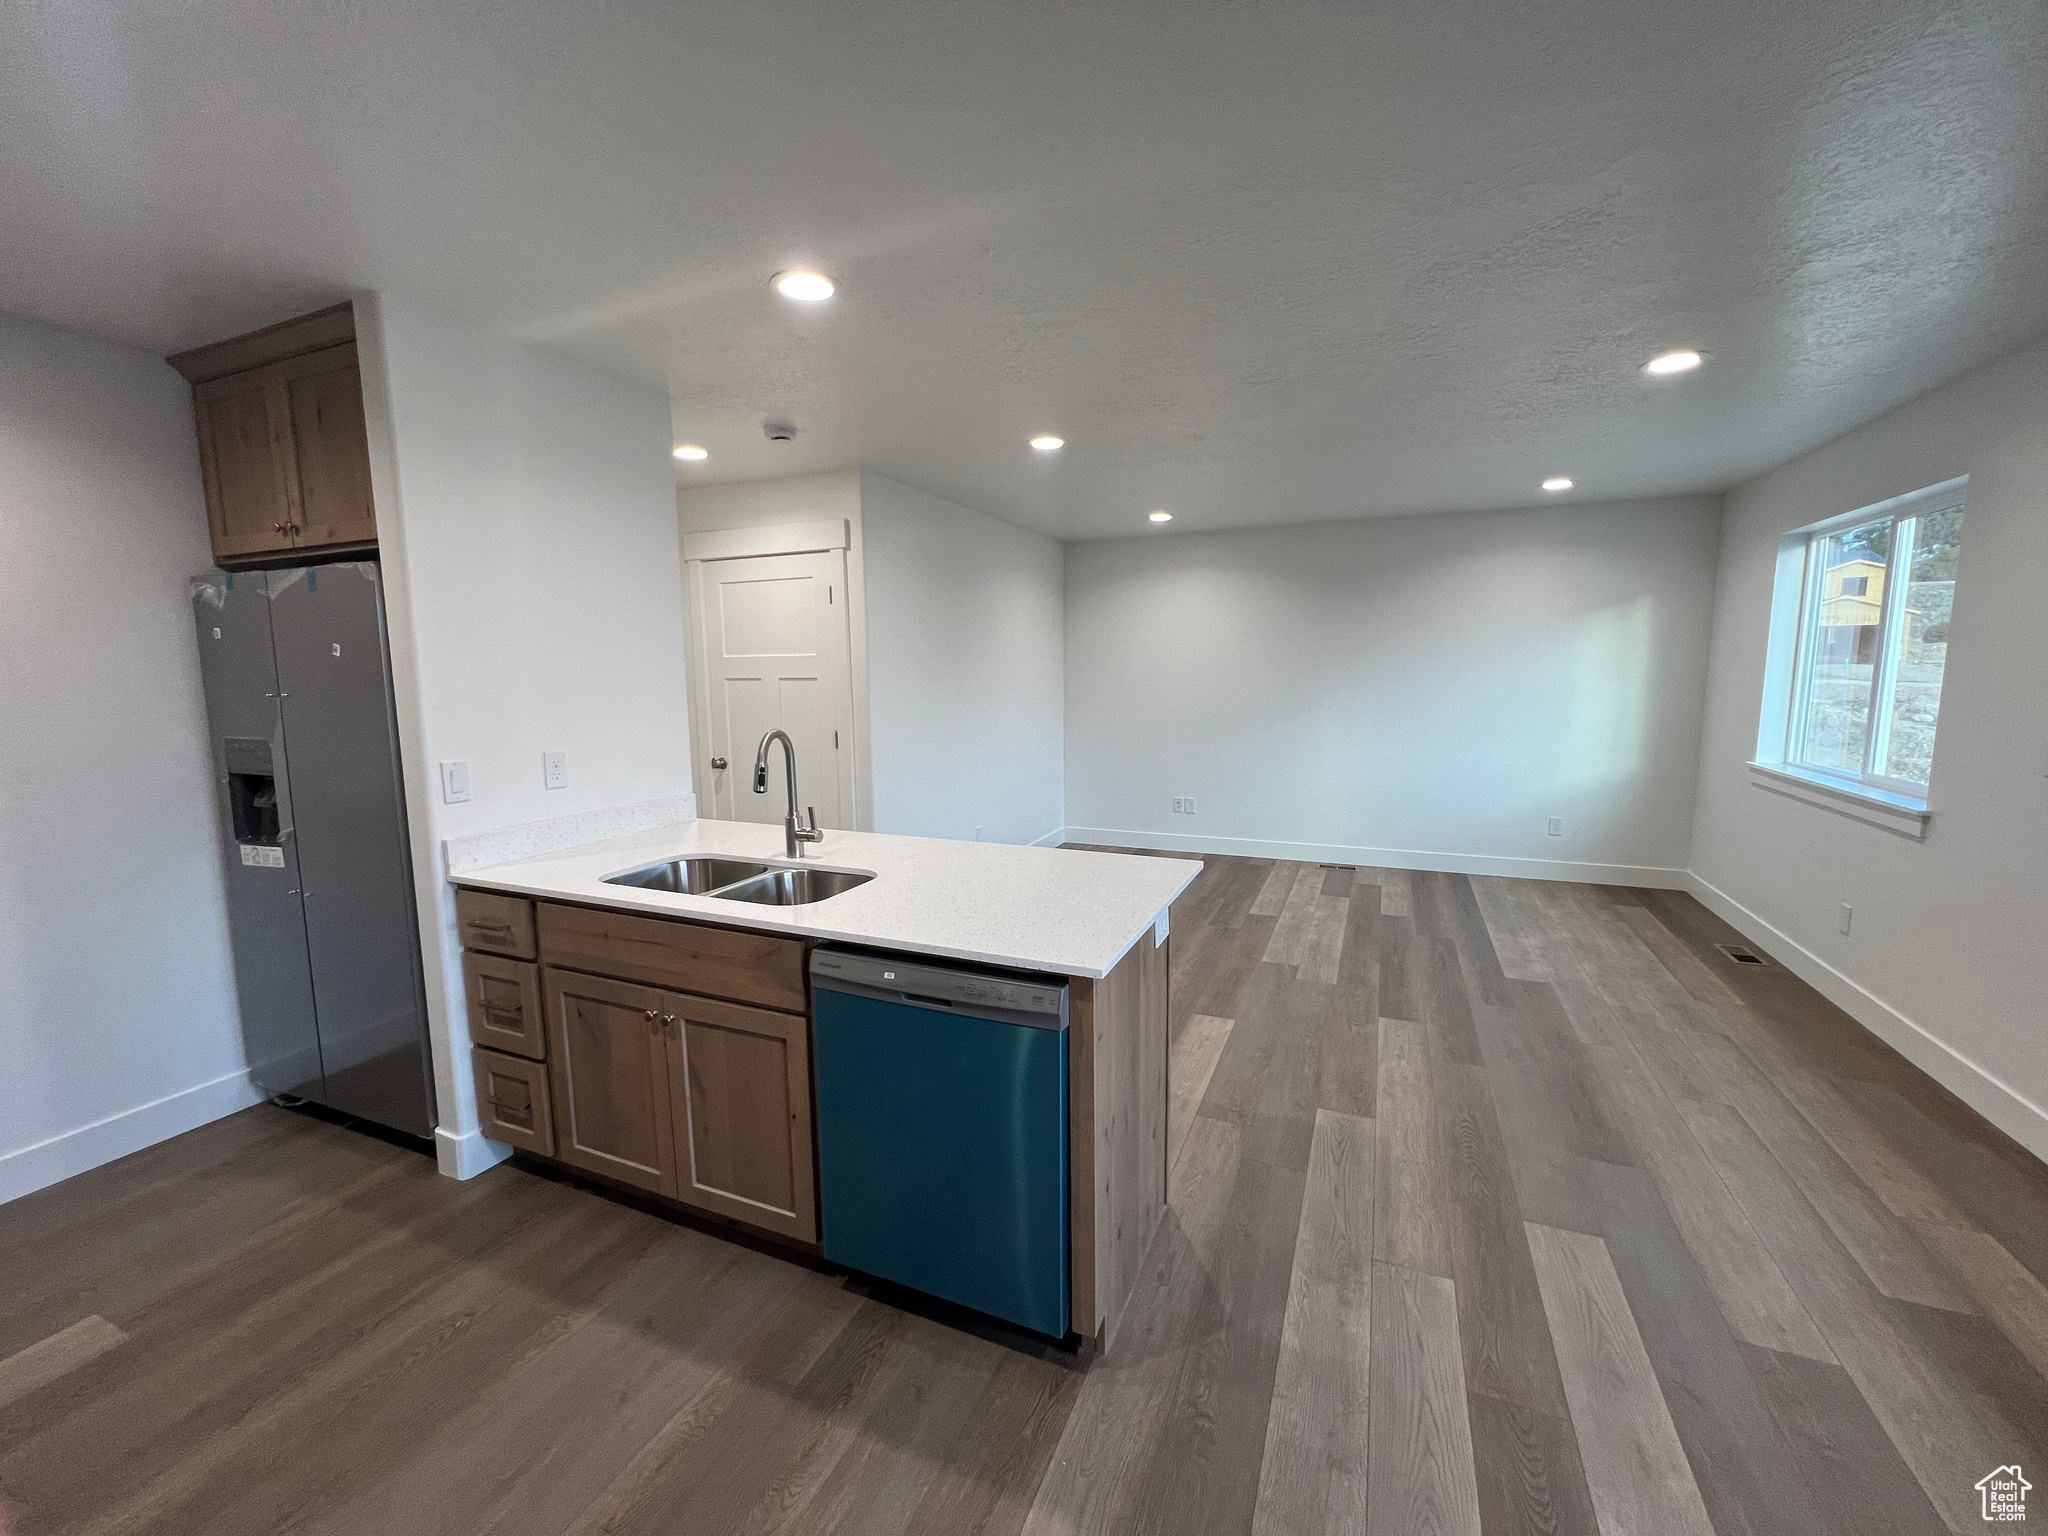 Kitchen with dishwashing machine, light hardwood / wood-style floors, refrigerator, and sink